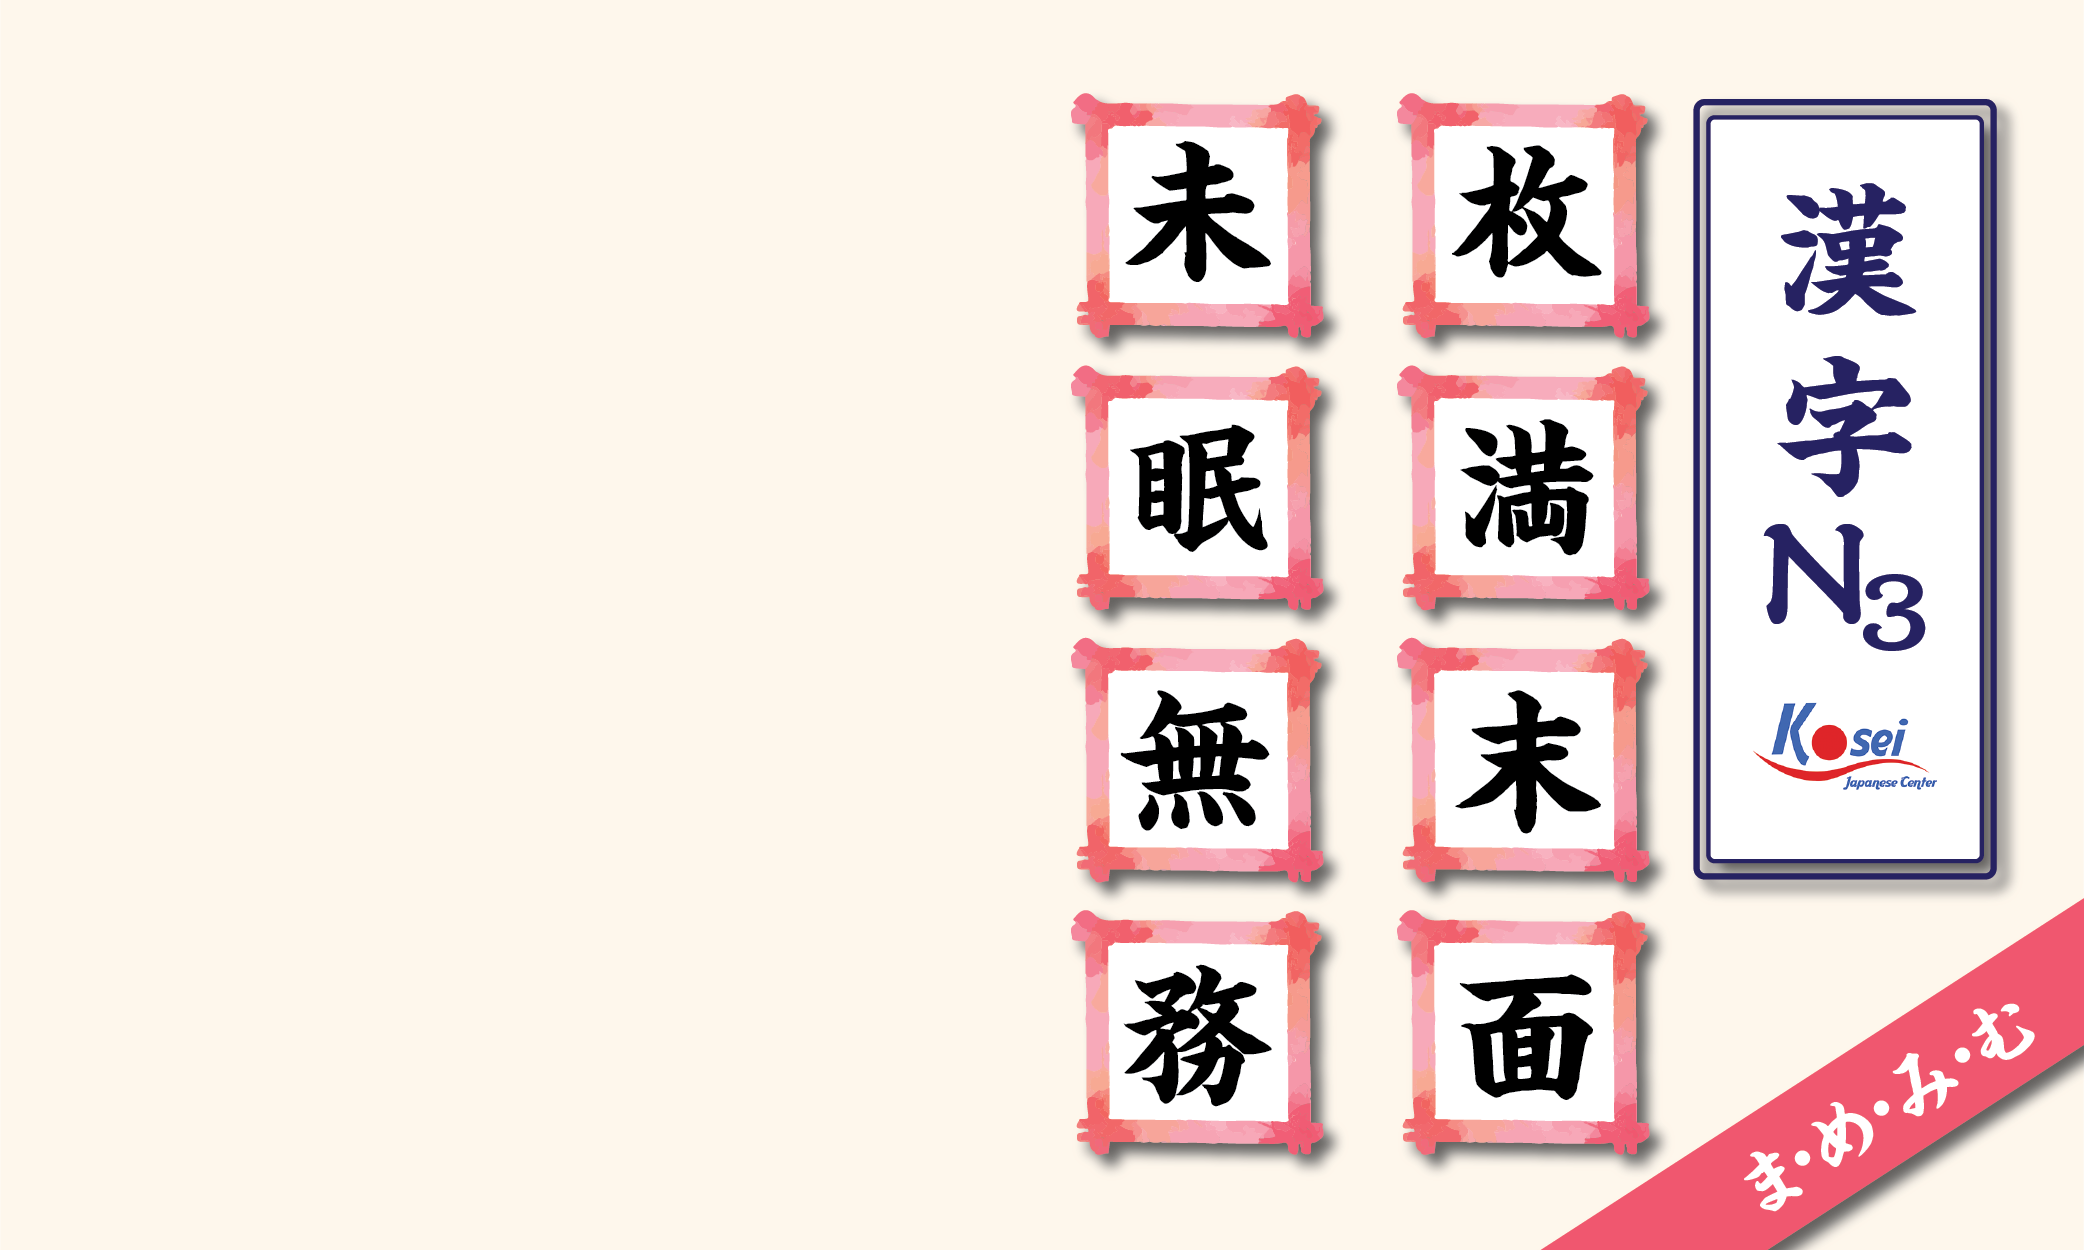 kanji n3 theo âm on hàng m